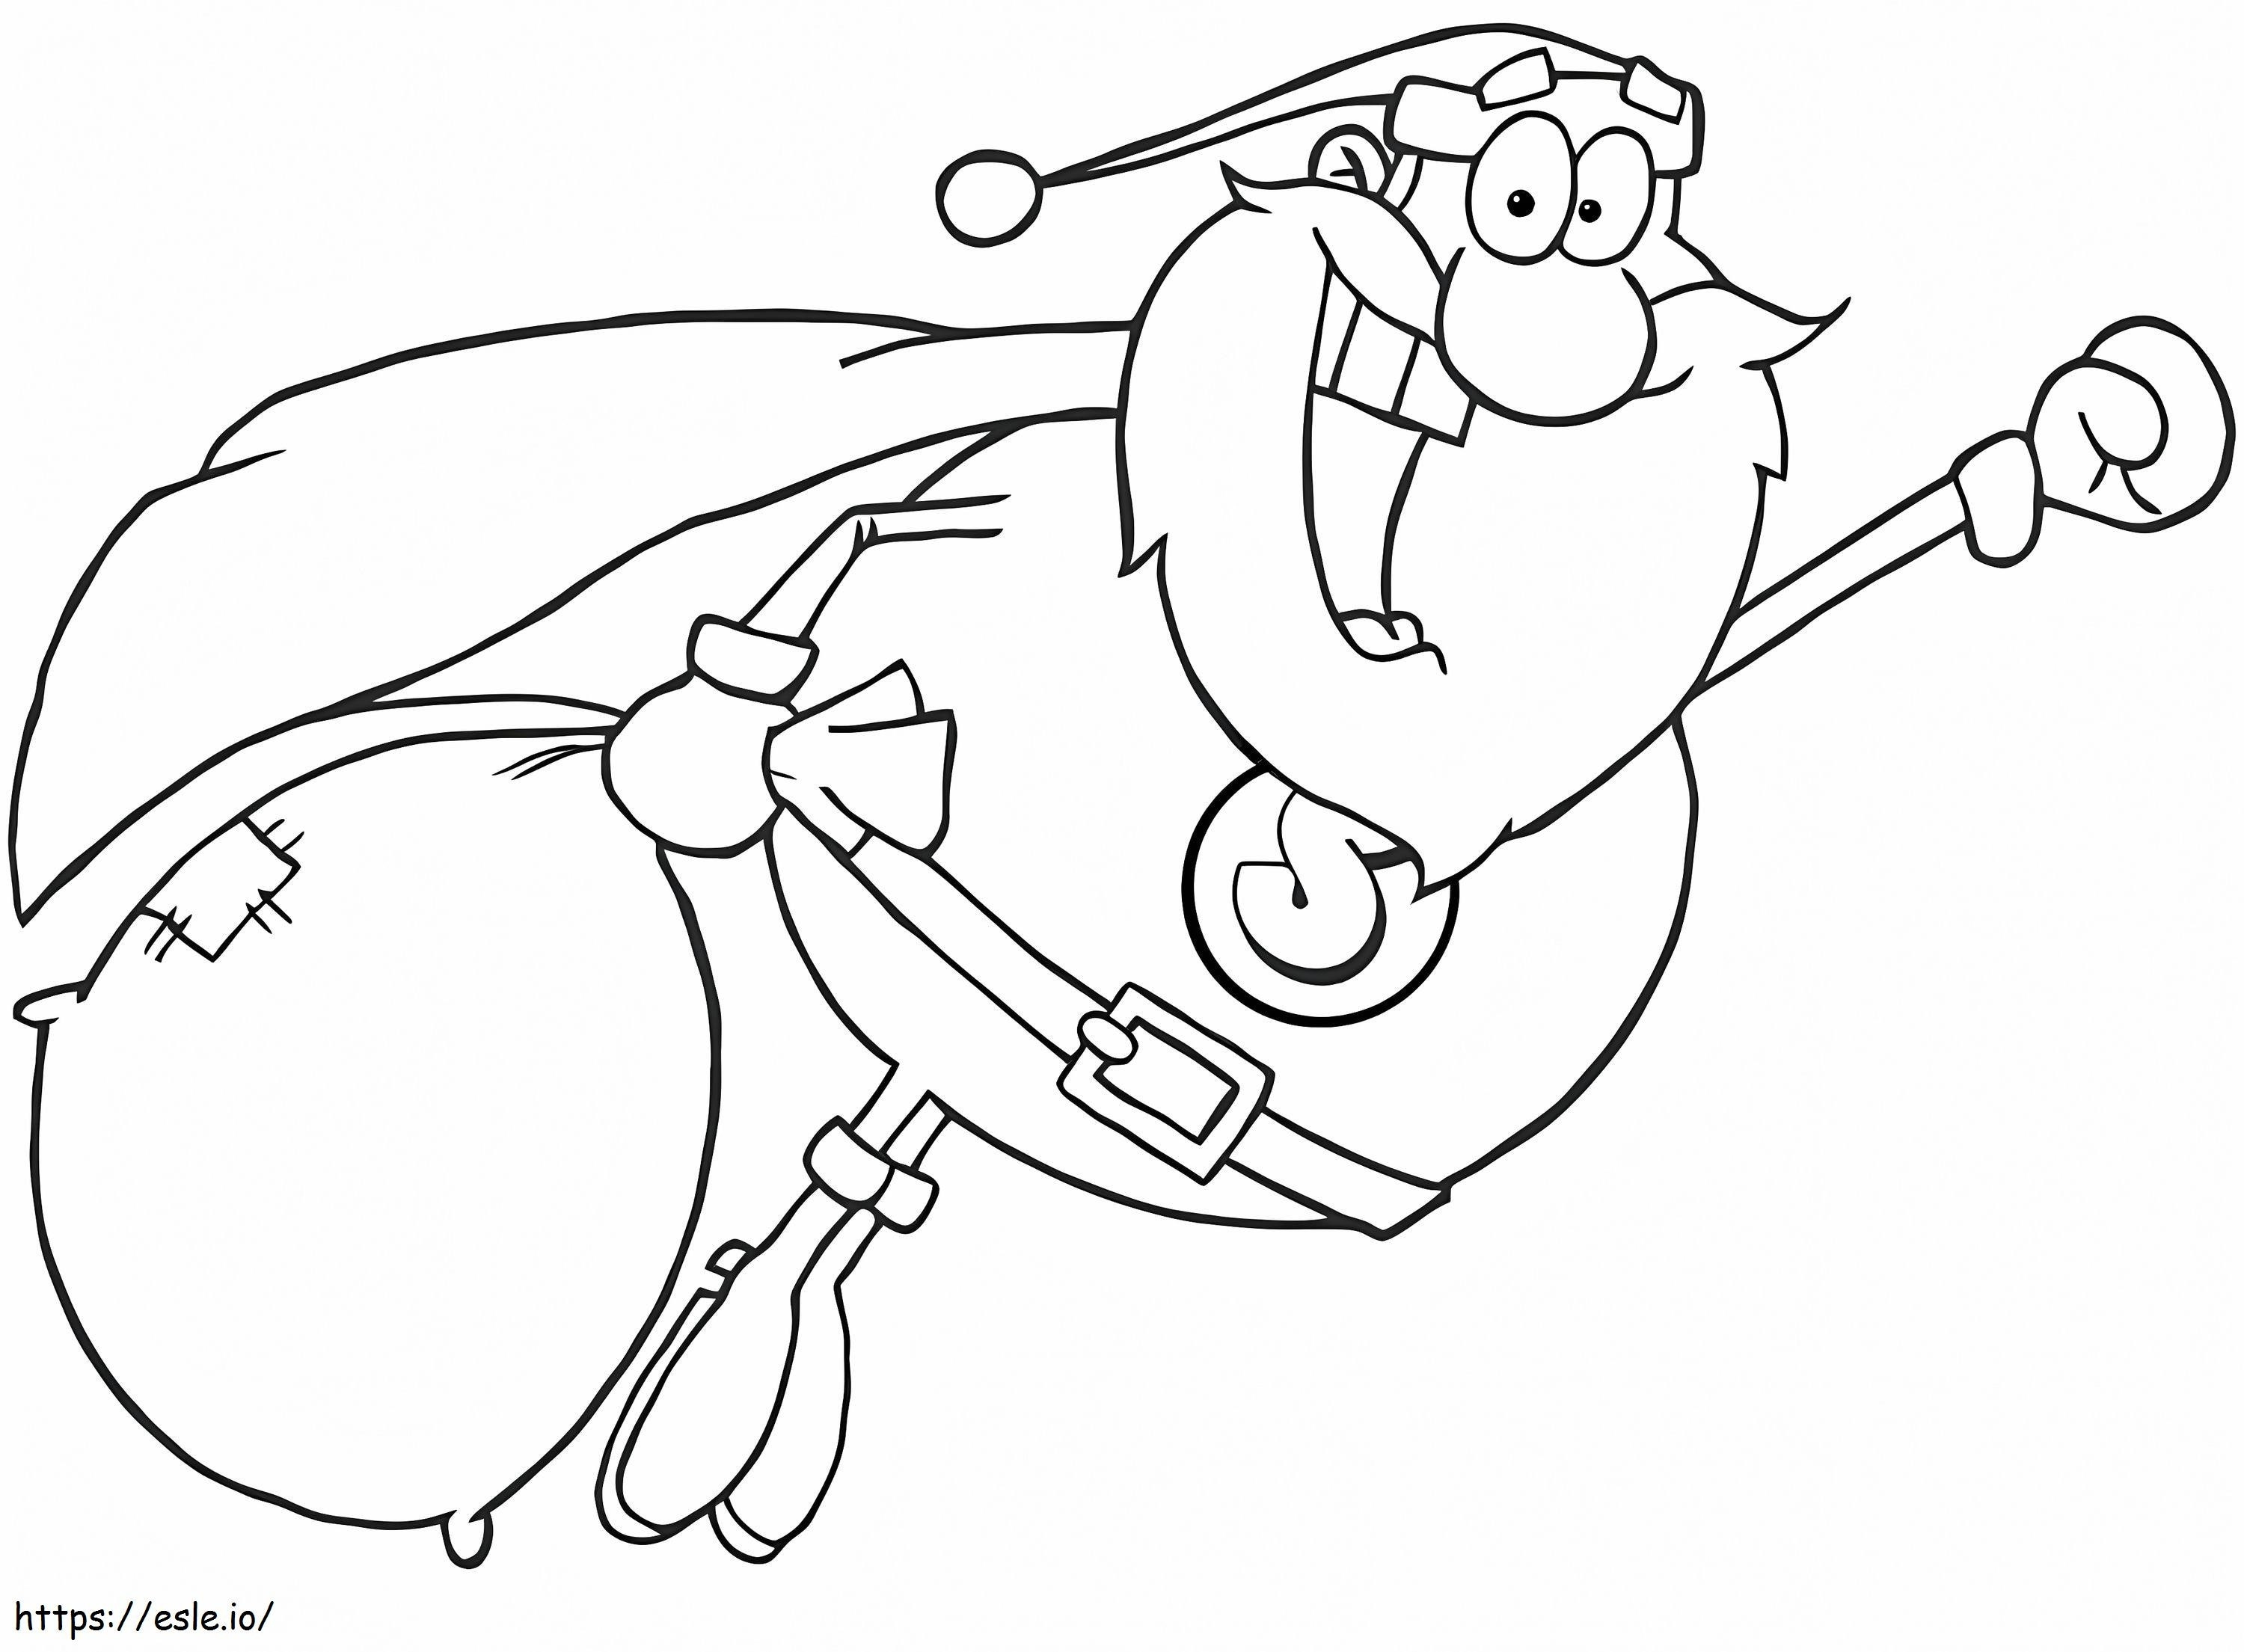 Fliegender Weihnachtsmann ausmalbilder